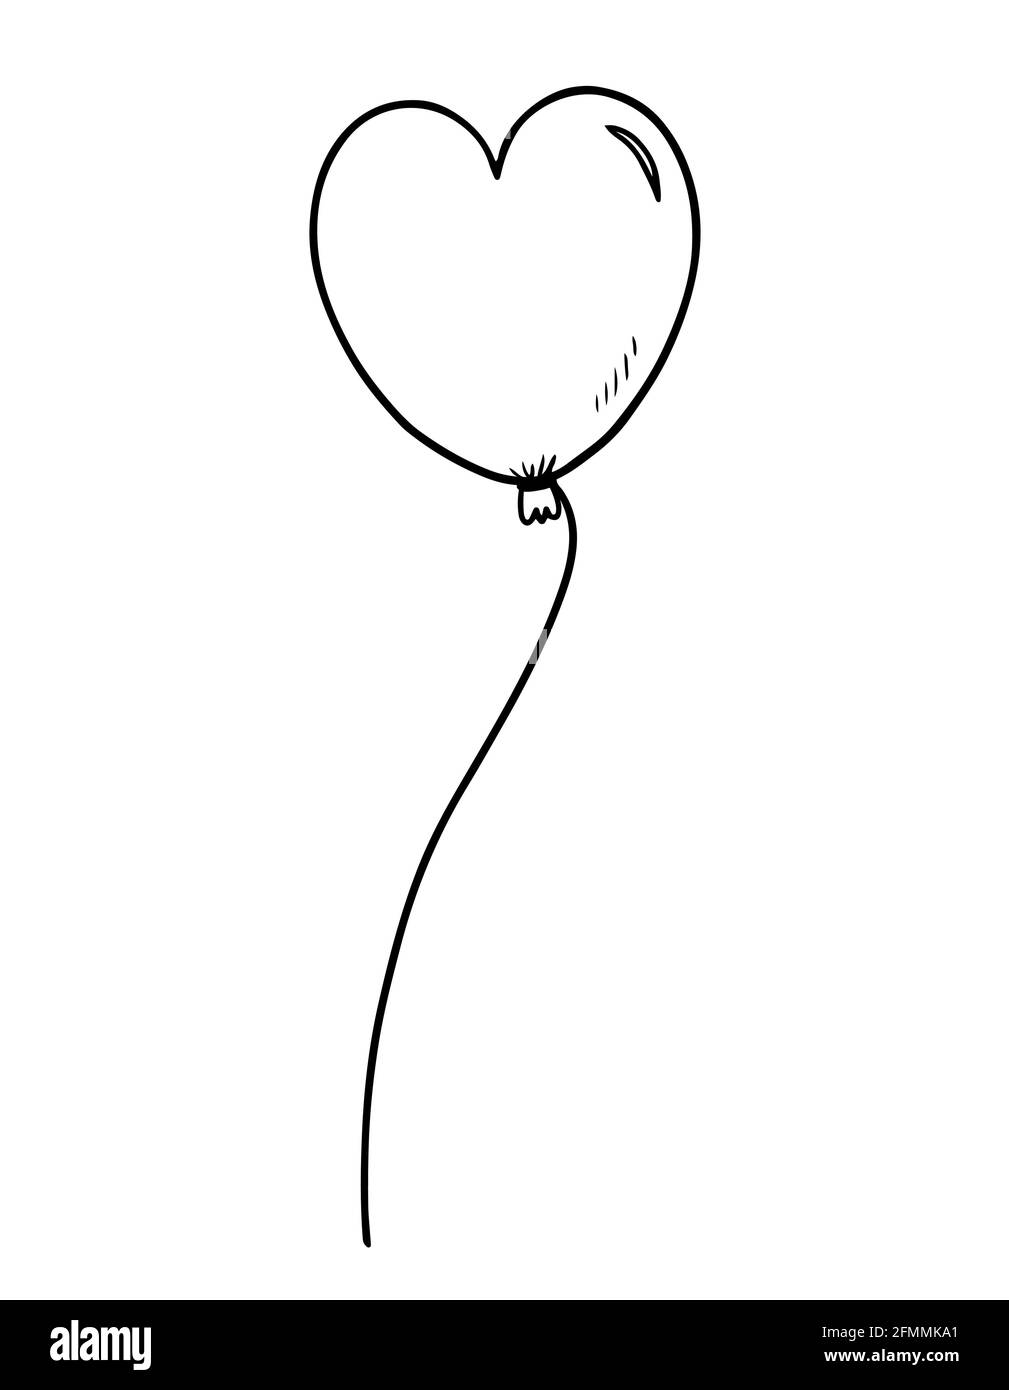 Palloncino a forma di cuore isolato su sfondo bianco. Illustrazione  vettoriale disegnata a mano in stile doodle. Perfetto per carte, logo,  inviti, decorazioni, disegni di compleanno Immagine e Vettoriale - Alamy